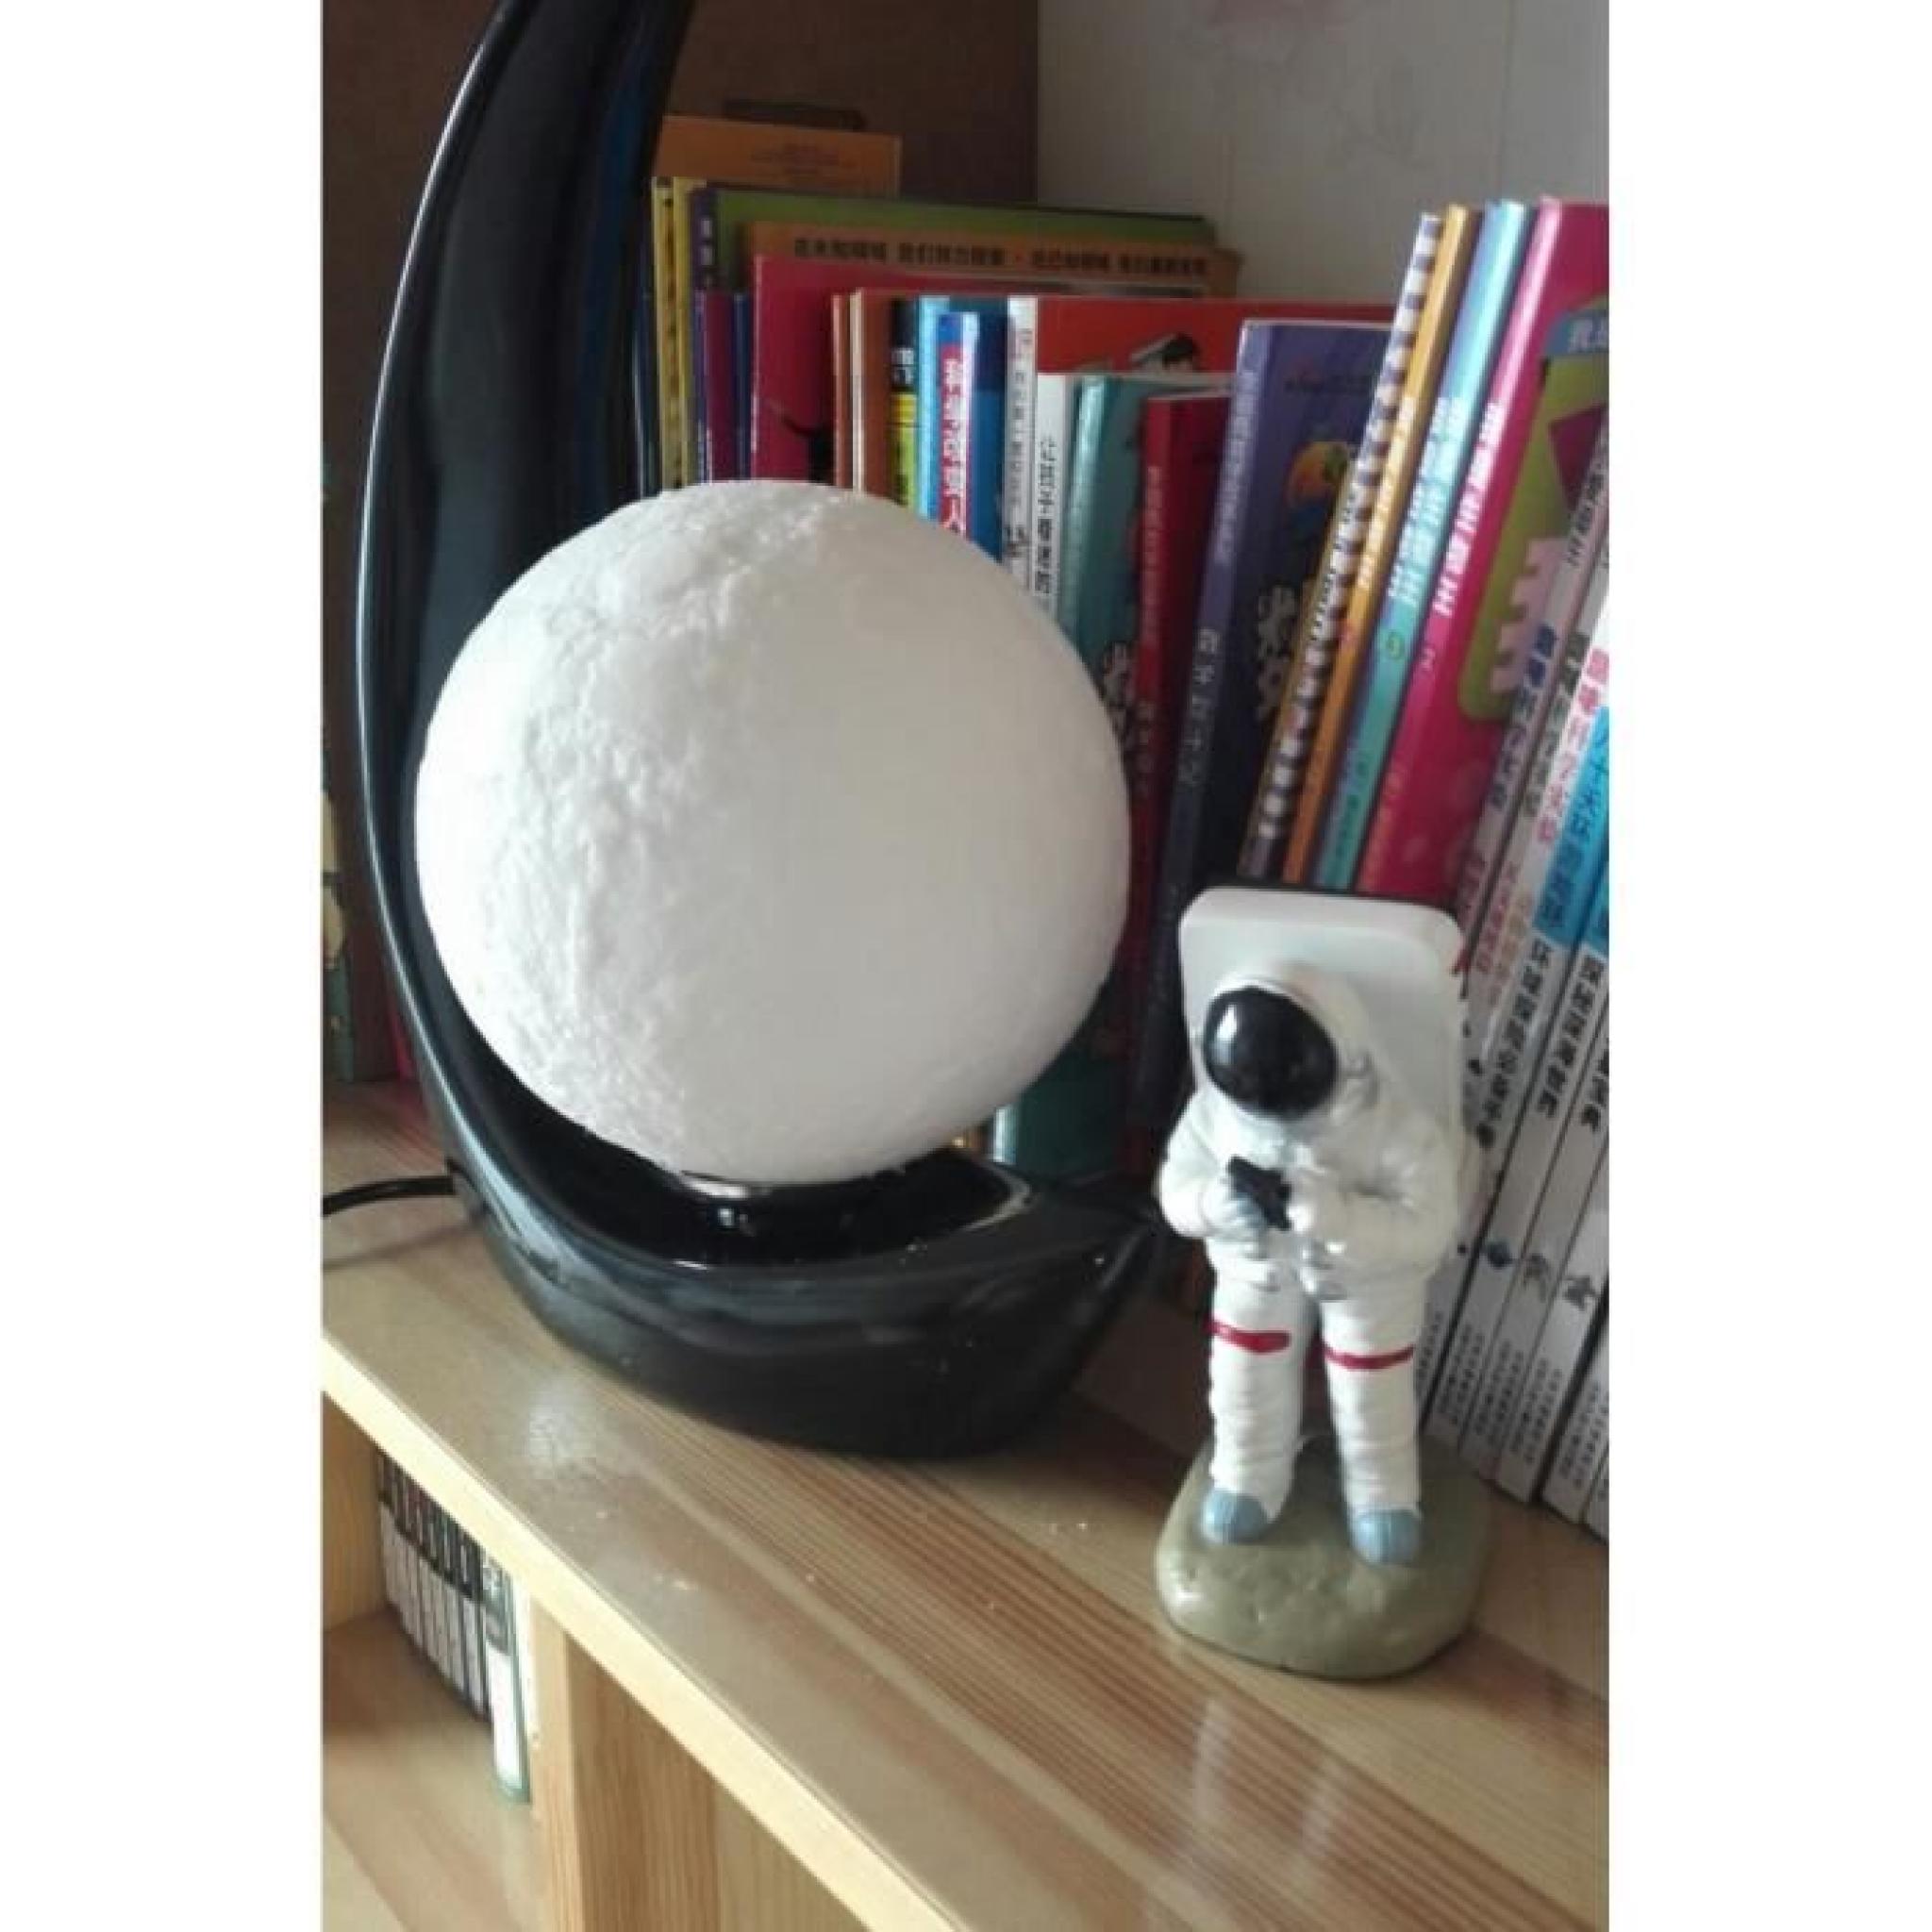 3D print TABLE LIGHT Lampe lunaire de création 3D de lampe d'une lampe à del de personnalisation pas cher